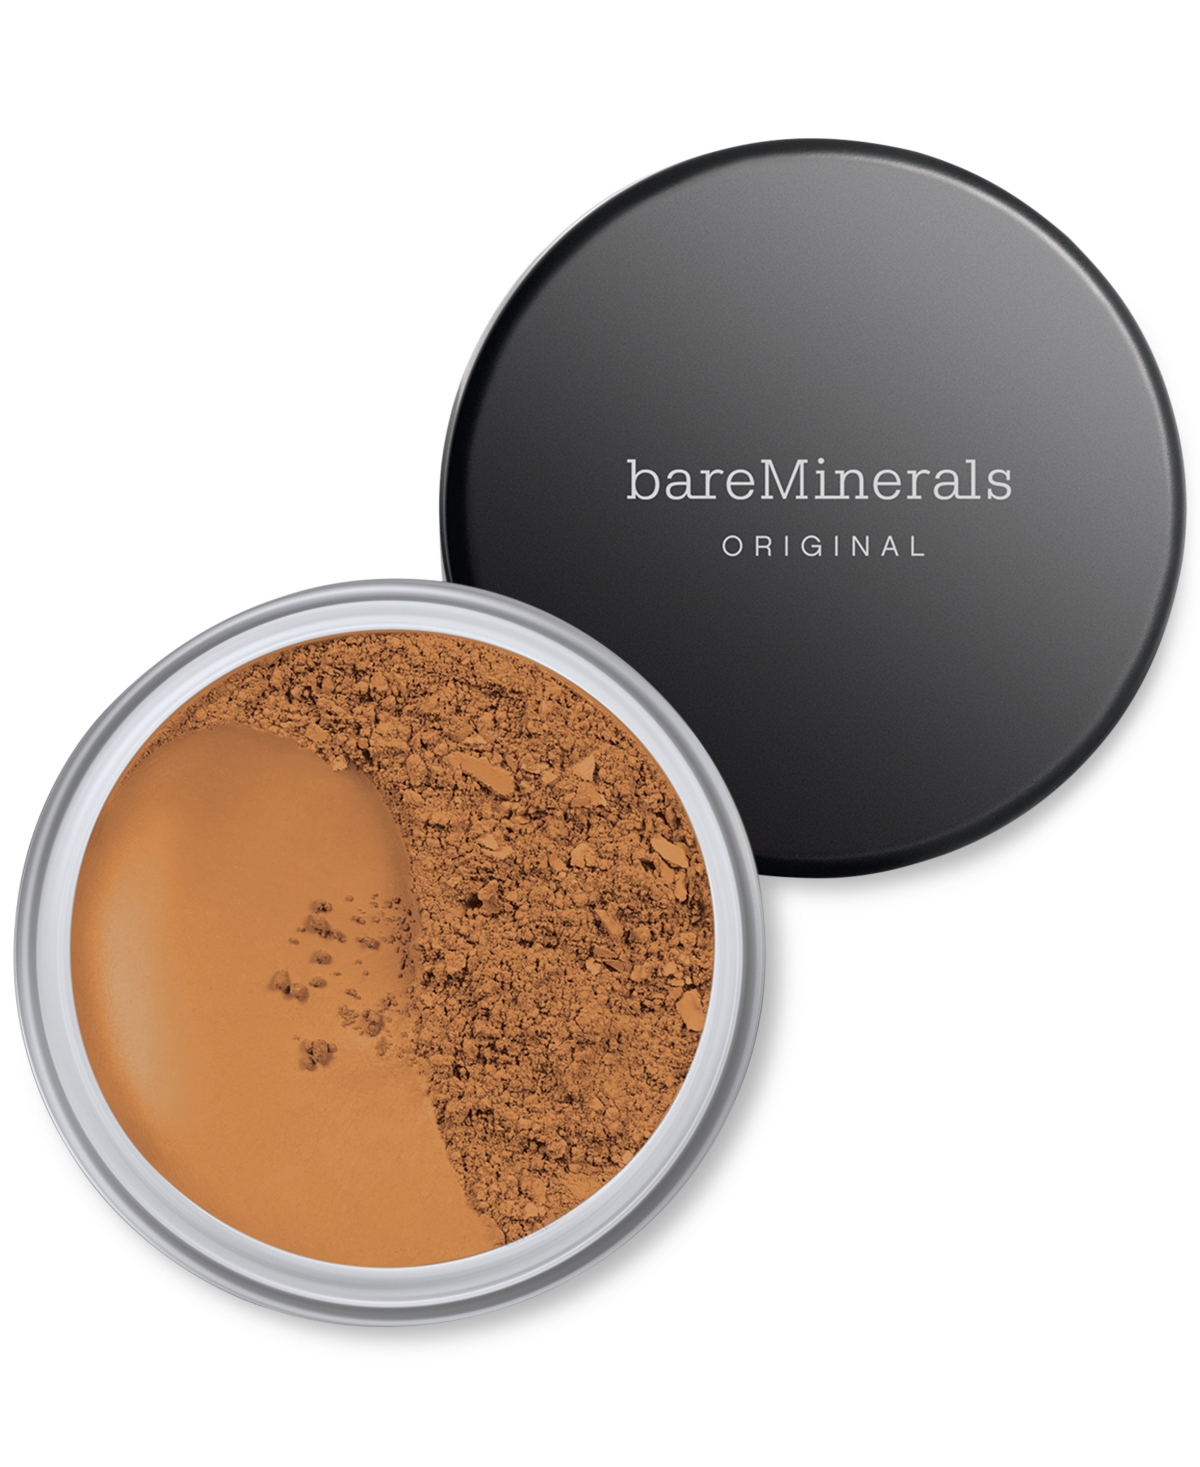 Bareminerals Original Loose Powder Foundation Spf 15 In Golden Dark  - For Dark Skin With Cool U